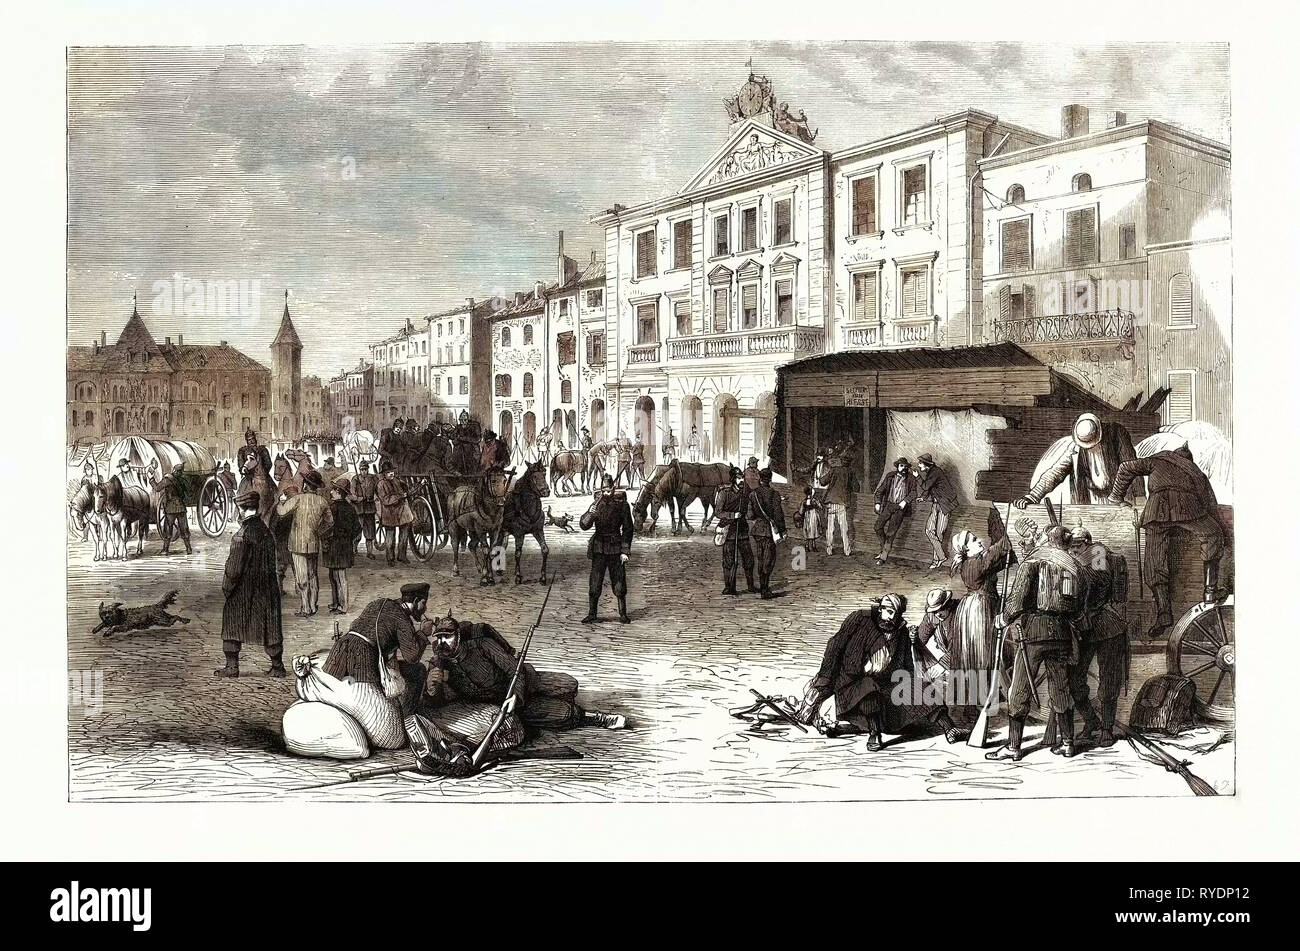 Guerre franco-allemande : la Place du marché et de la ville de Pont-a-Mousson, le 19 août 1870 Banque D'Images